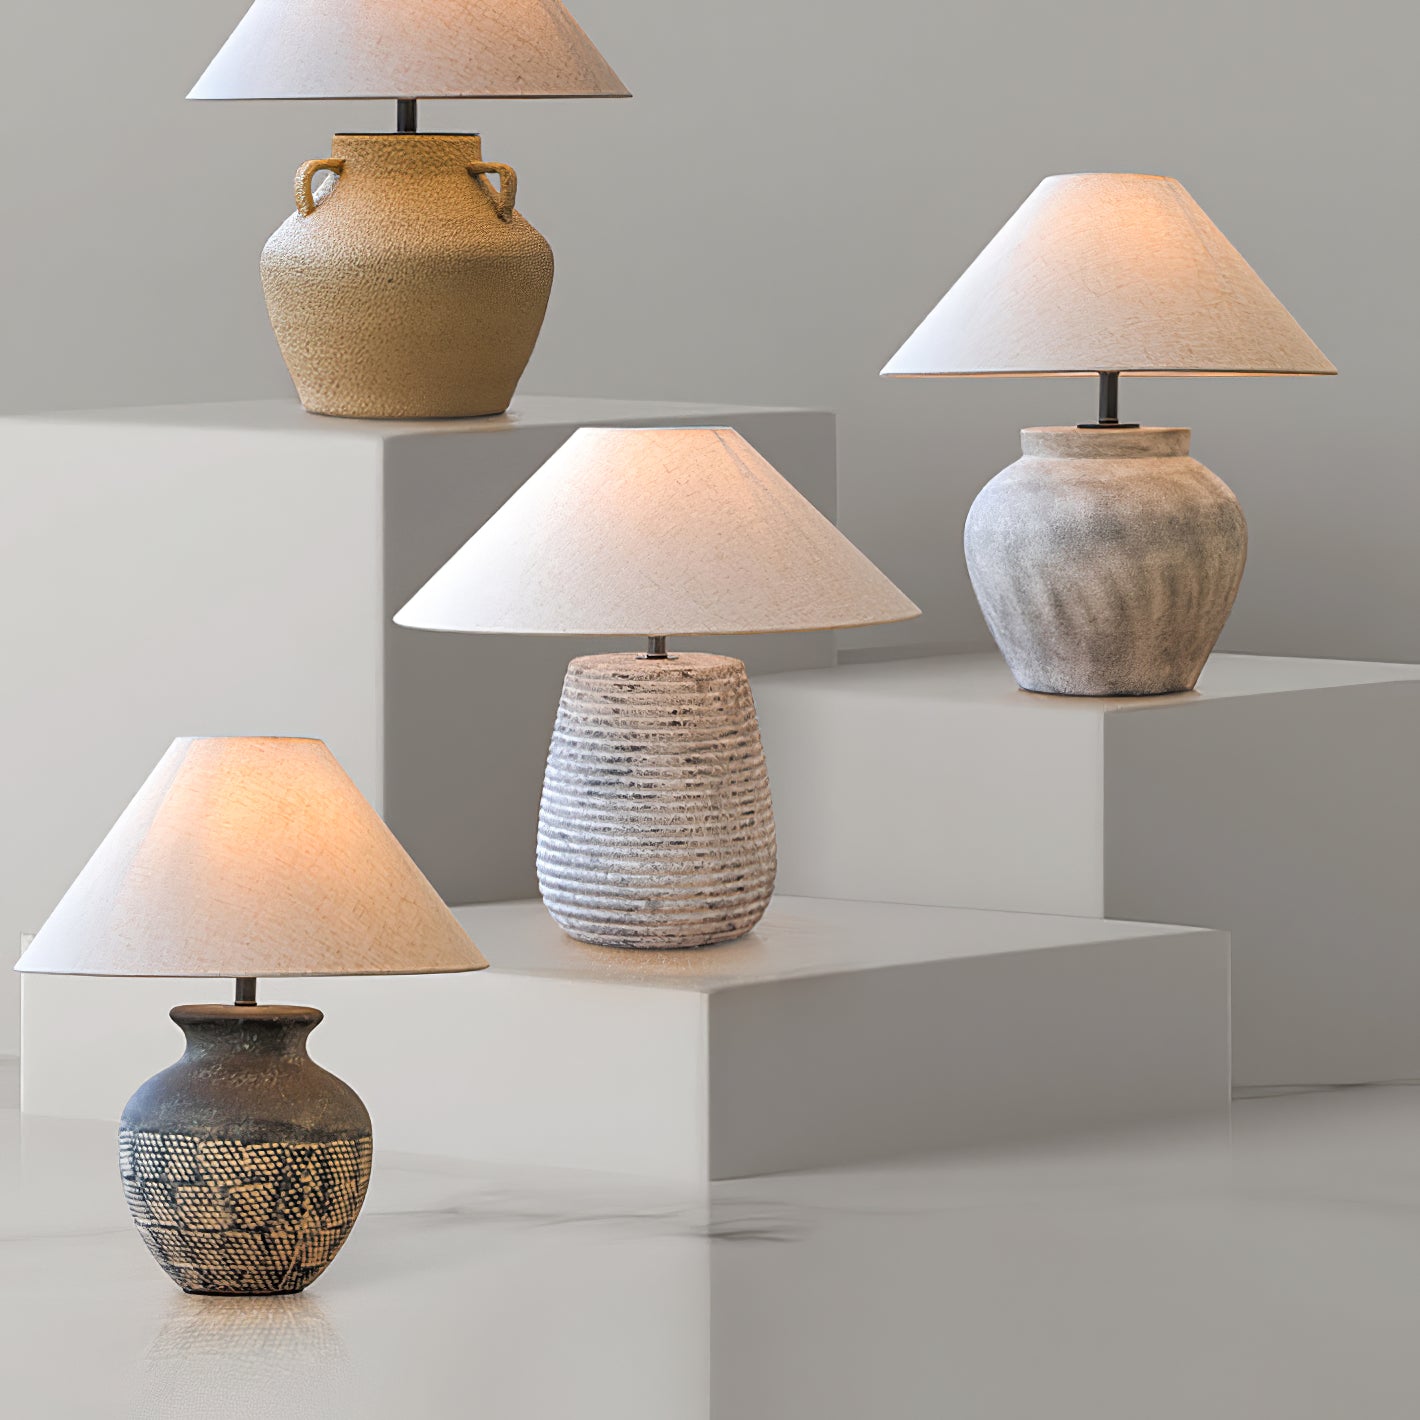 Koa Table Lamp